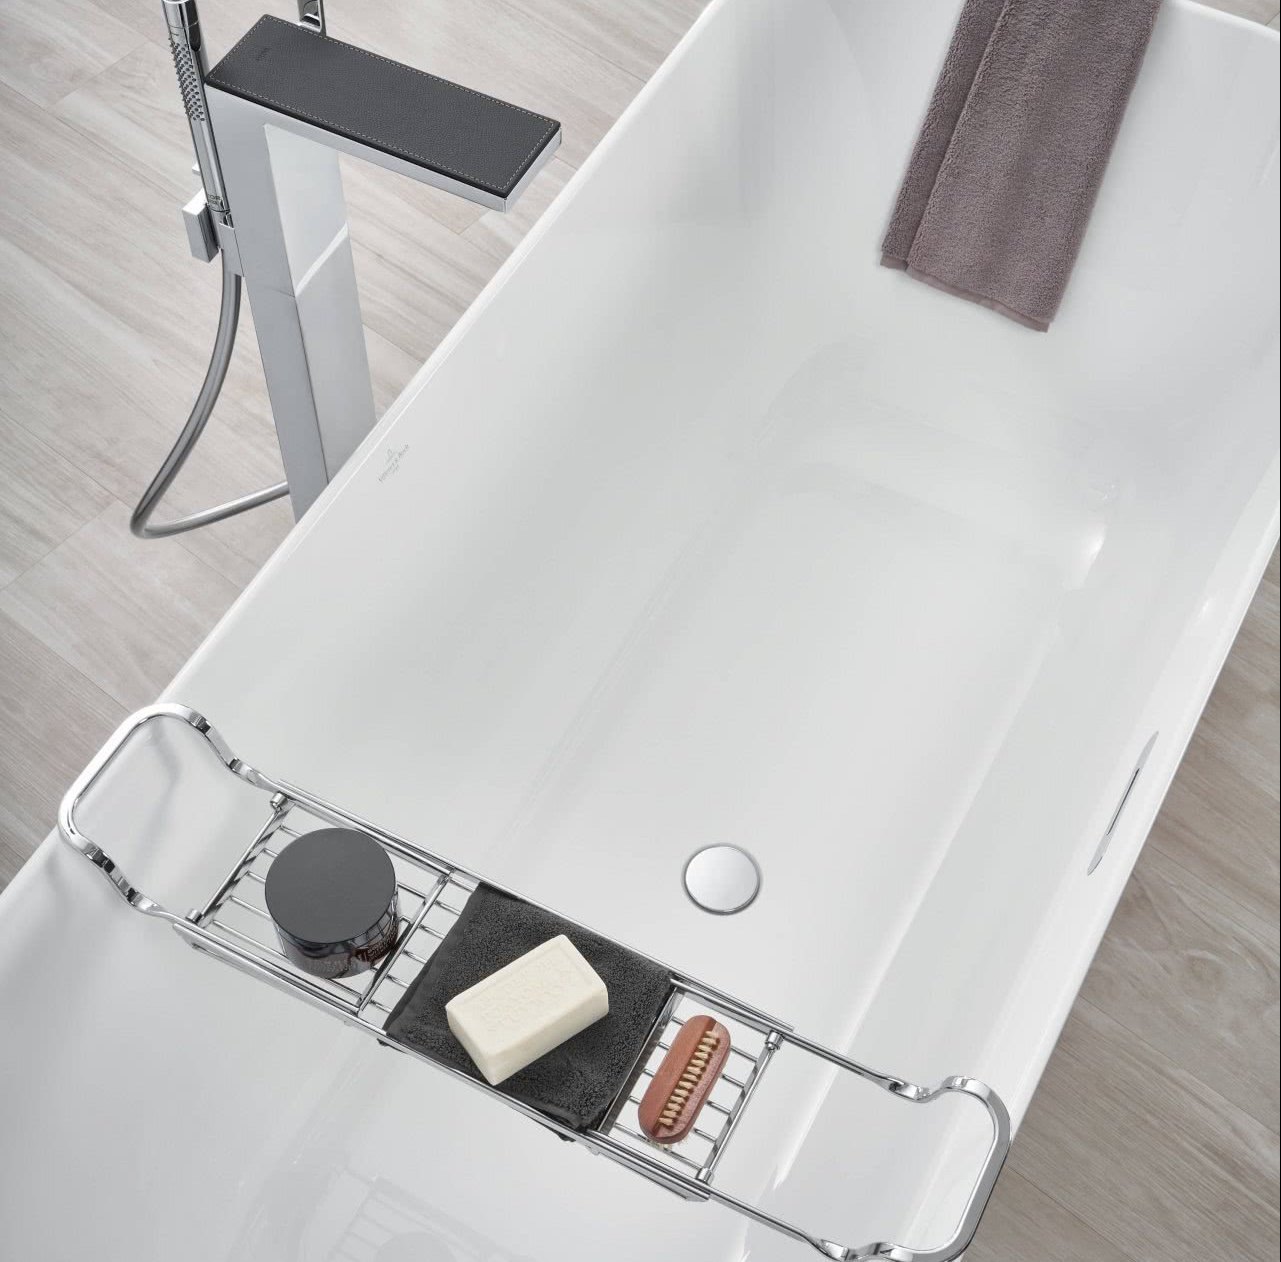 Loftbad mit Badewanne zum Entspannen Inspration BadeWelten